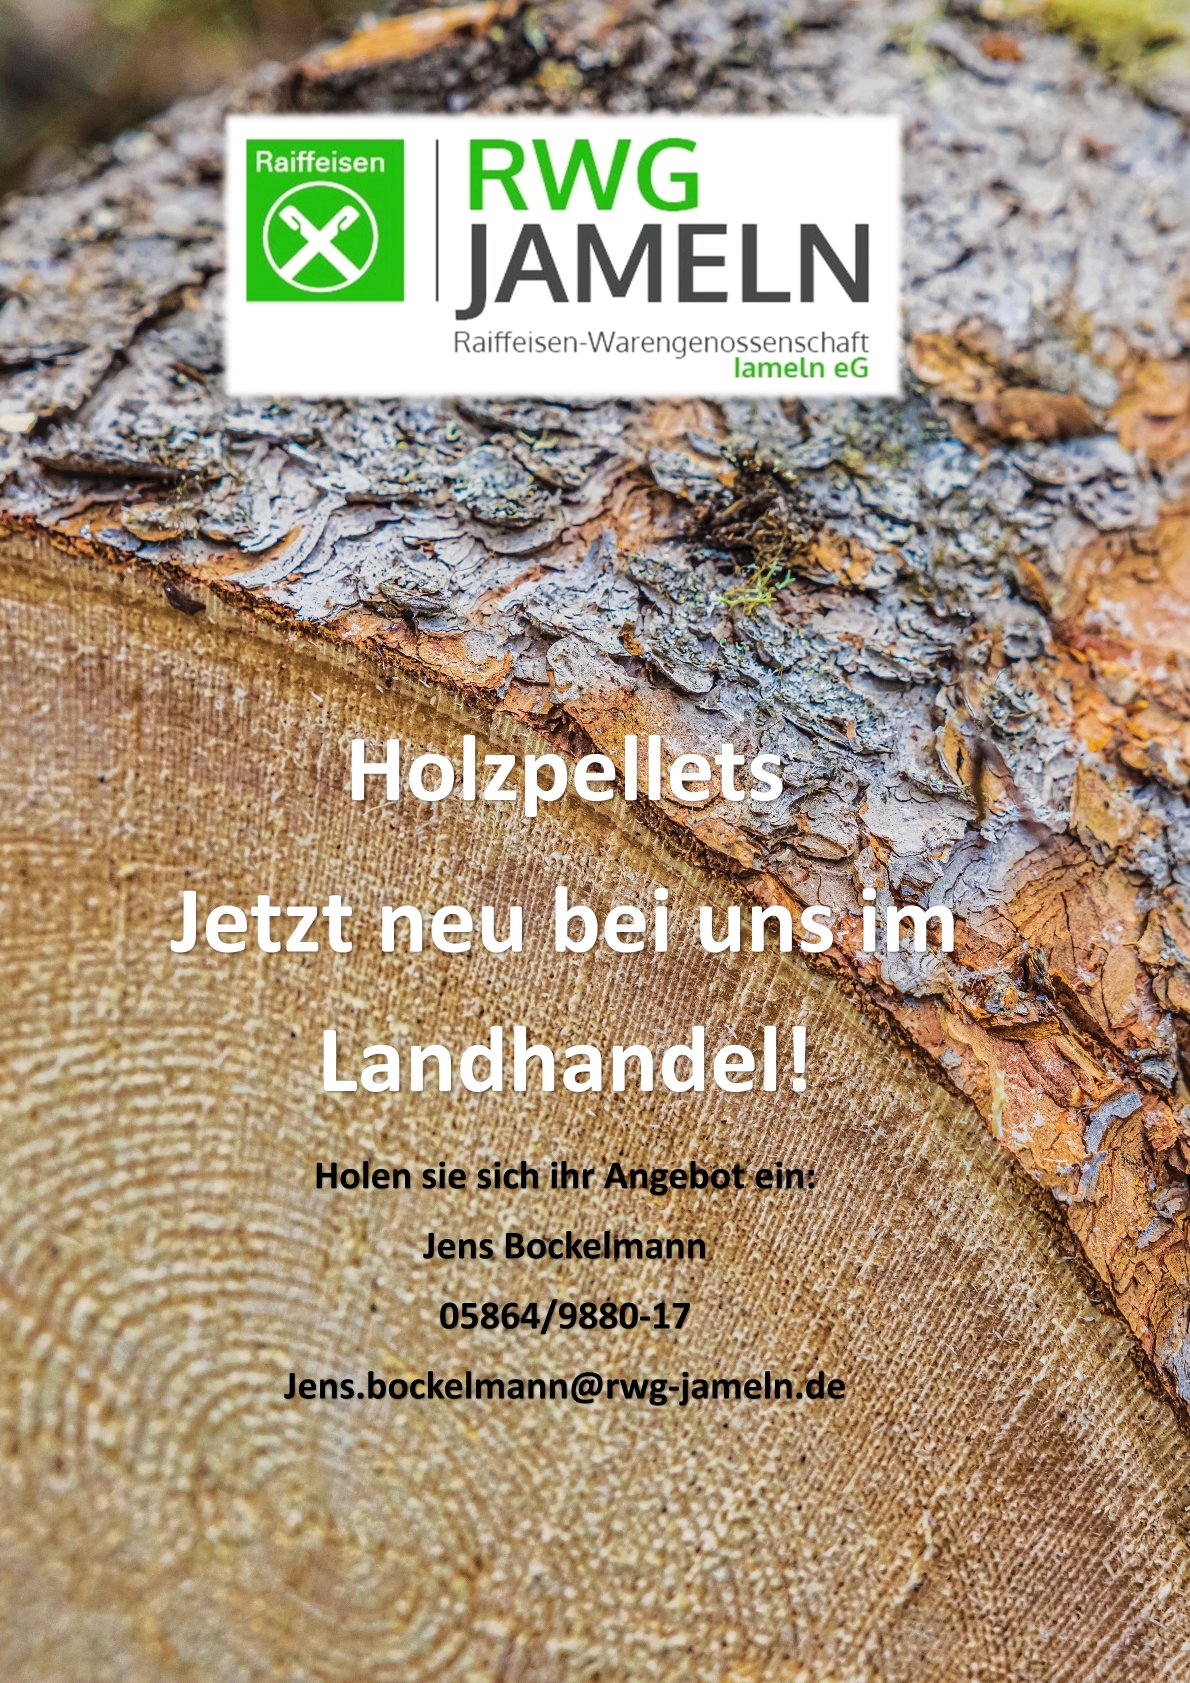 Holzpellets_RWG_Jameln-jpg